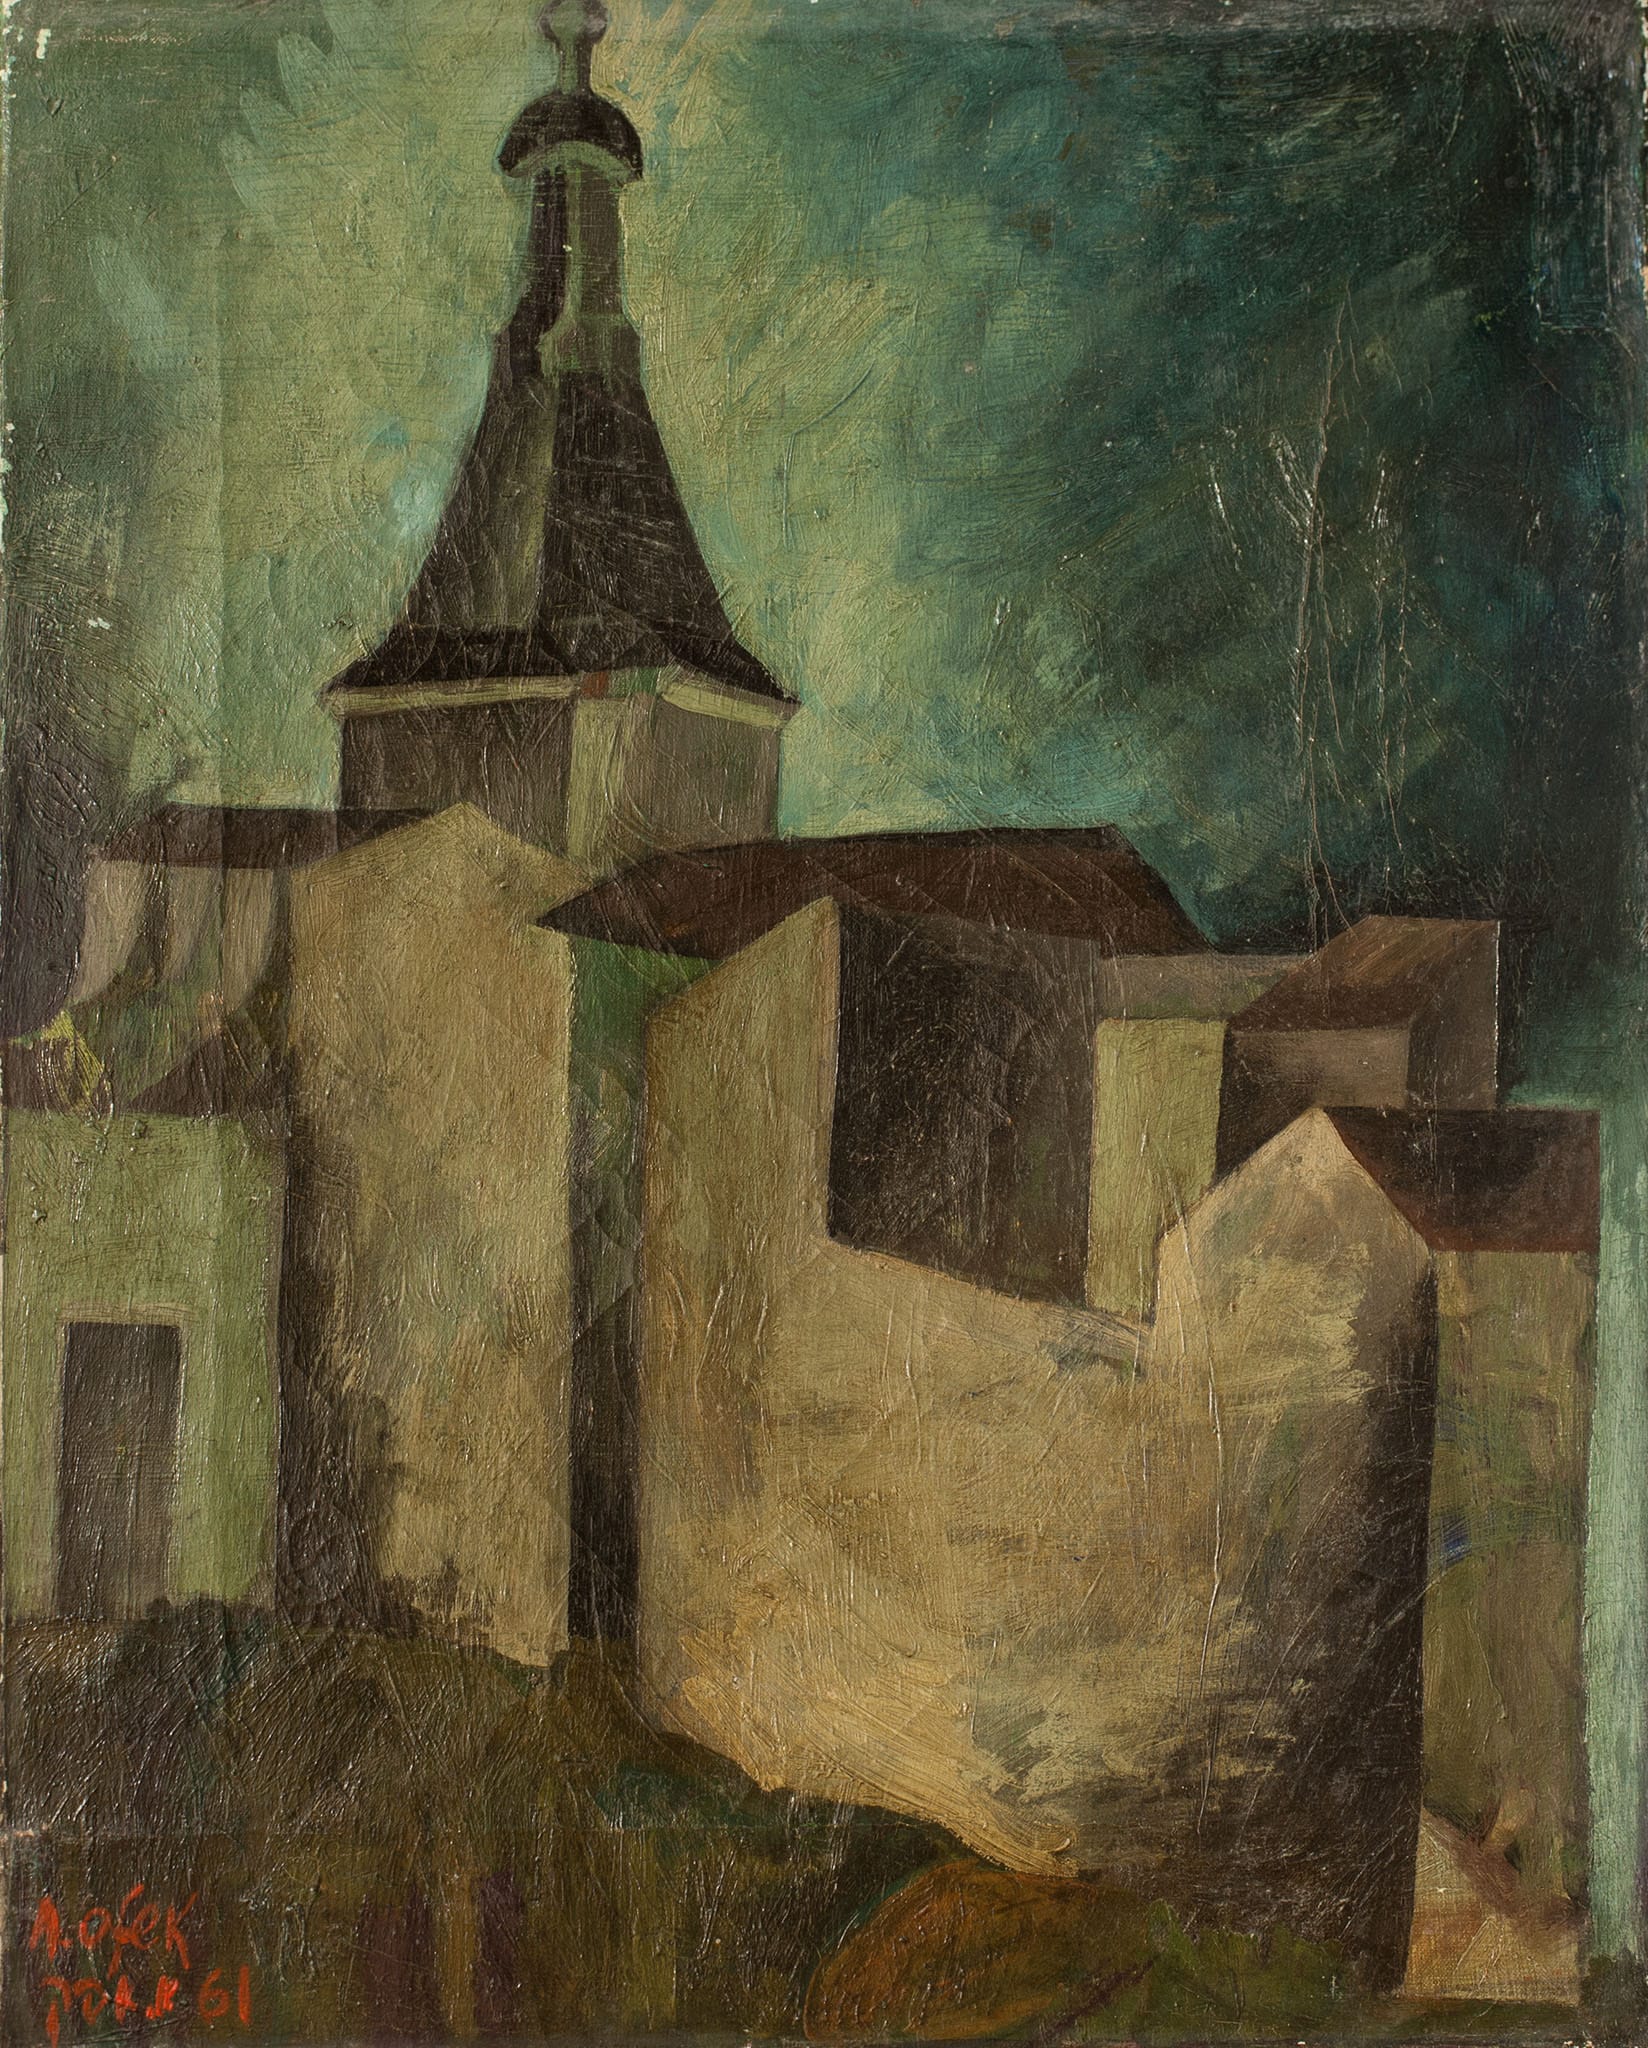 אברהם אופק, "עיר אירופאית", 1961, שמן על בד, 33x41 ס"מ